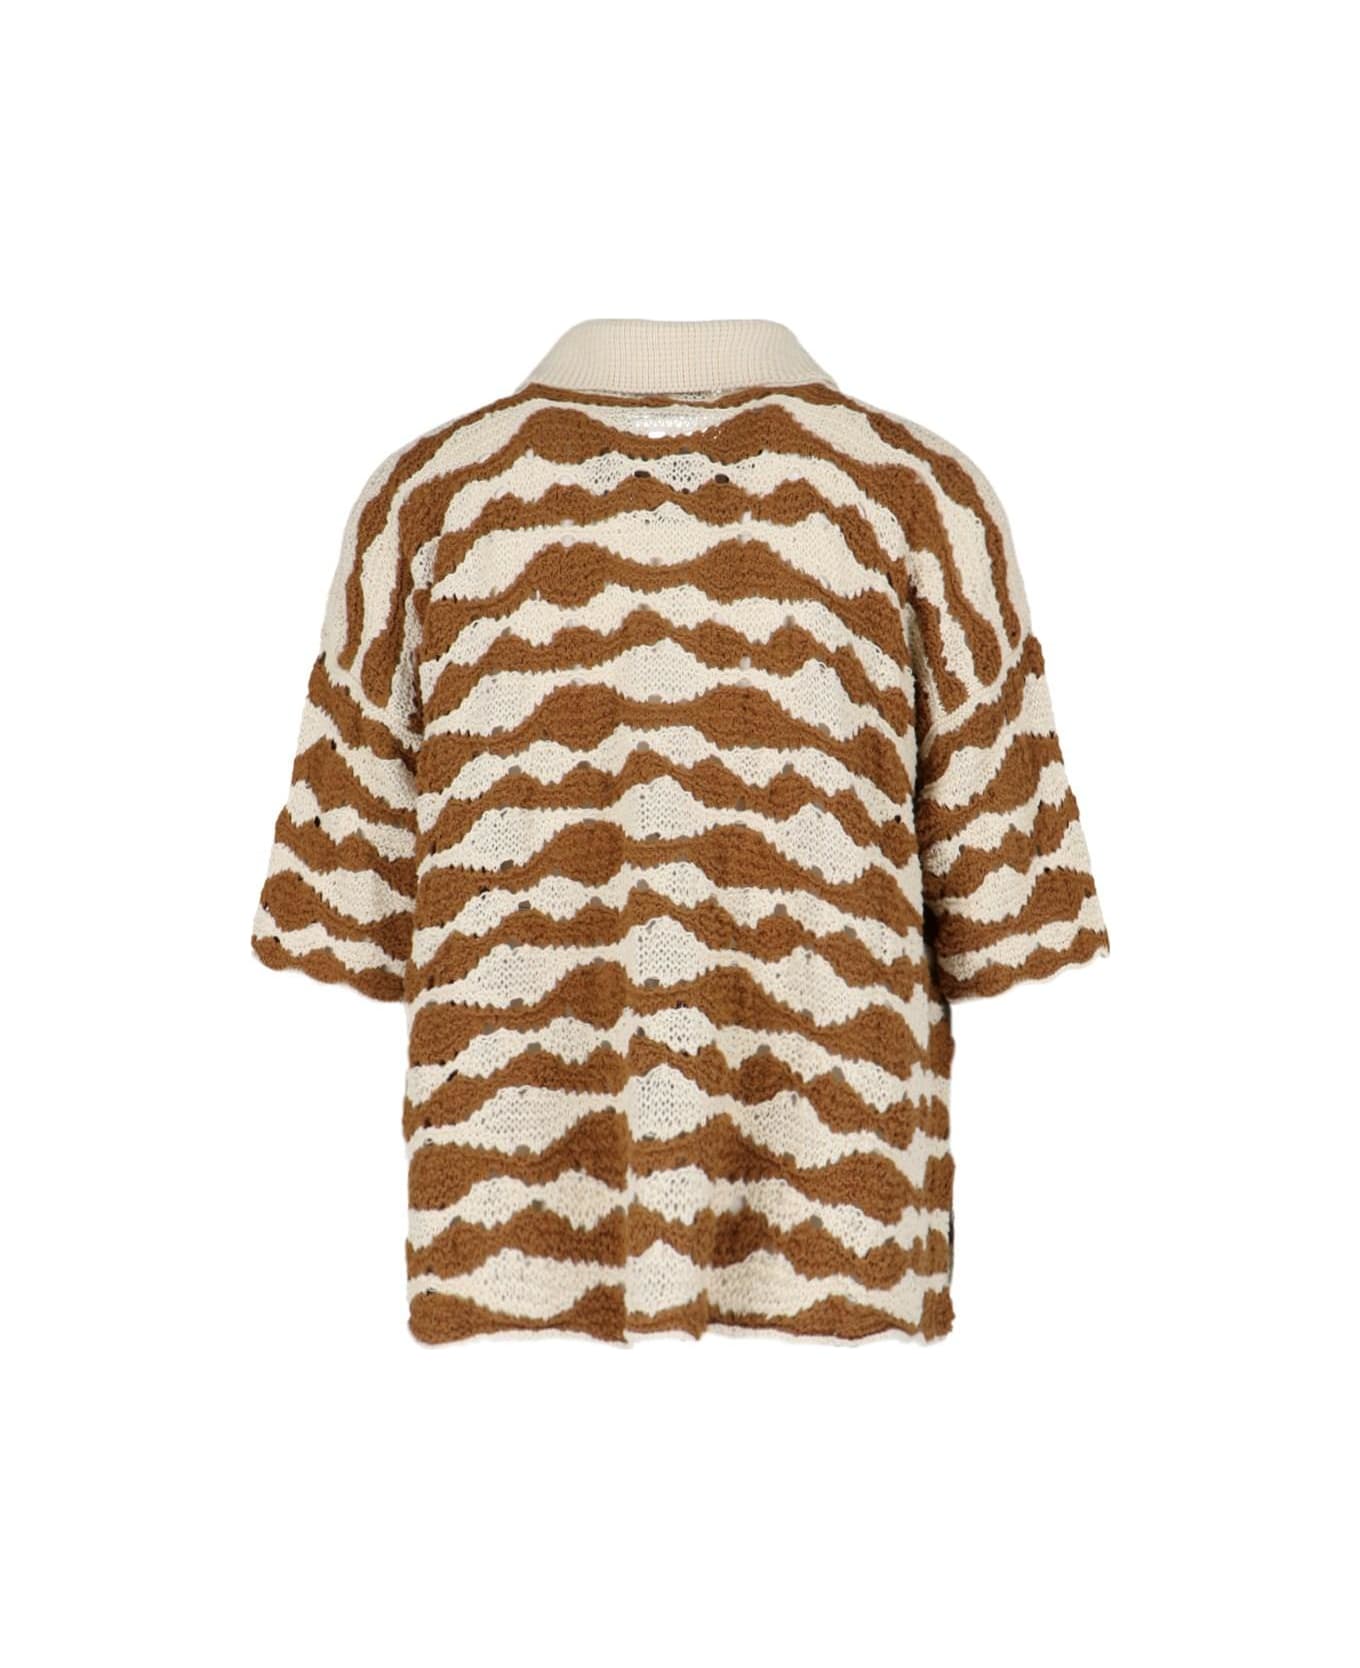 Bonsai Knitted Shirt - Beige ニットウェア